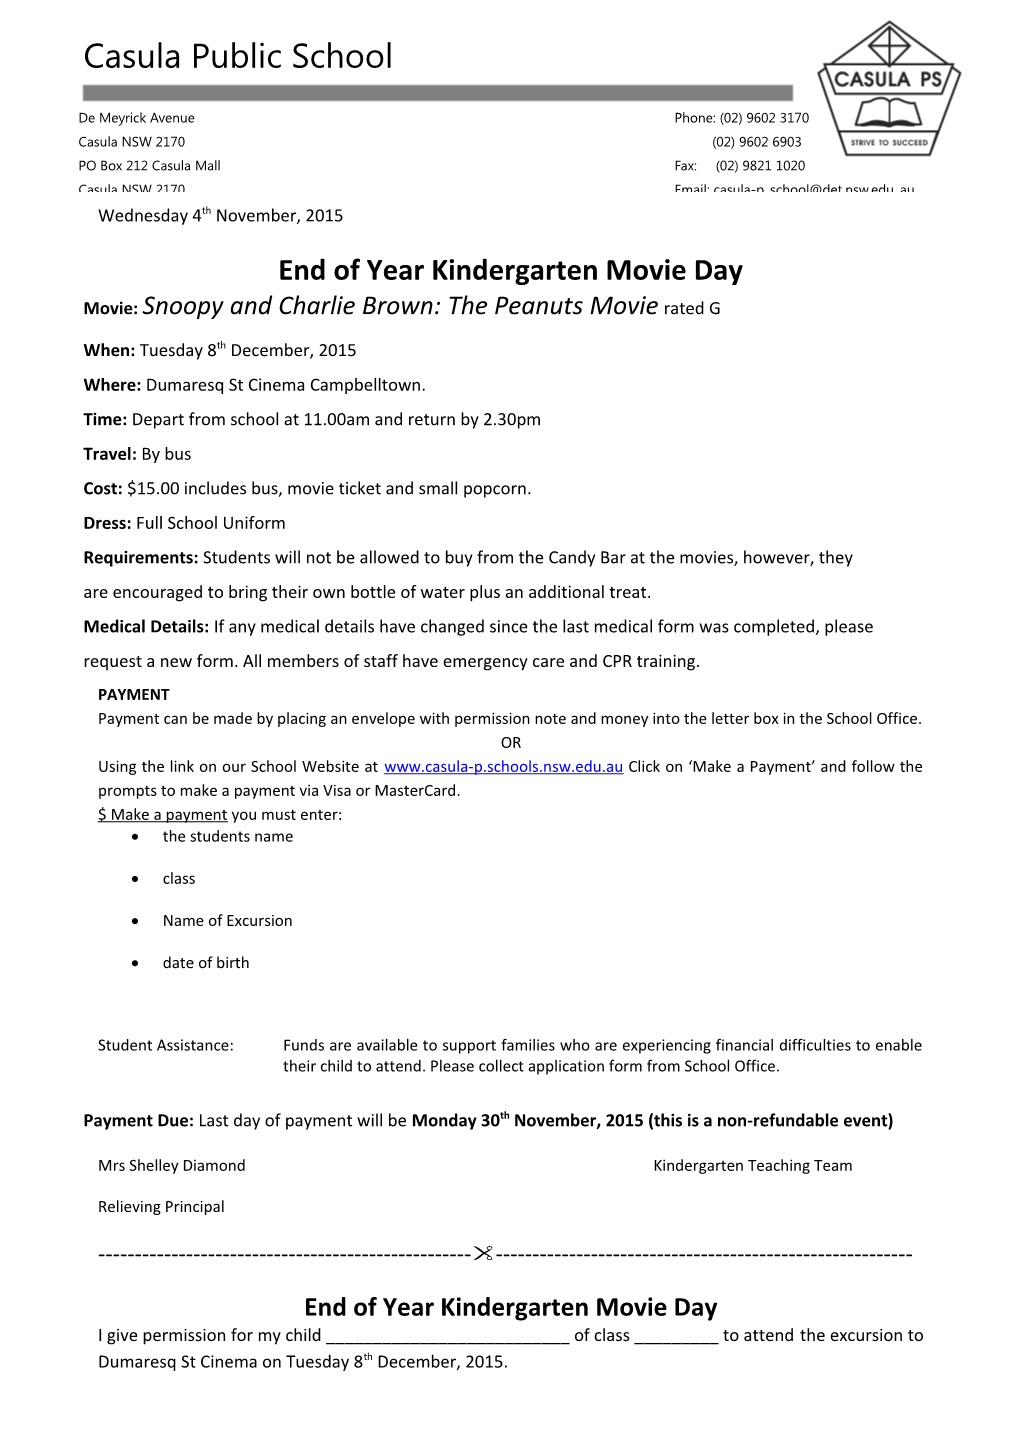 End of Year Kindergarten Movie Day